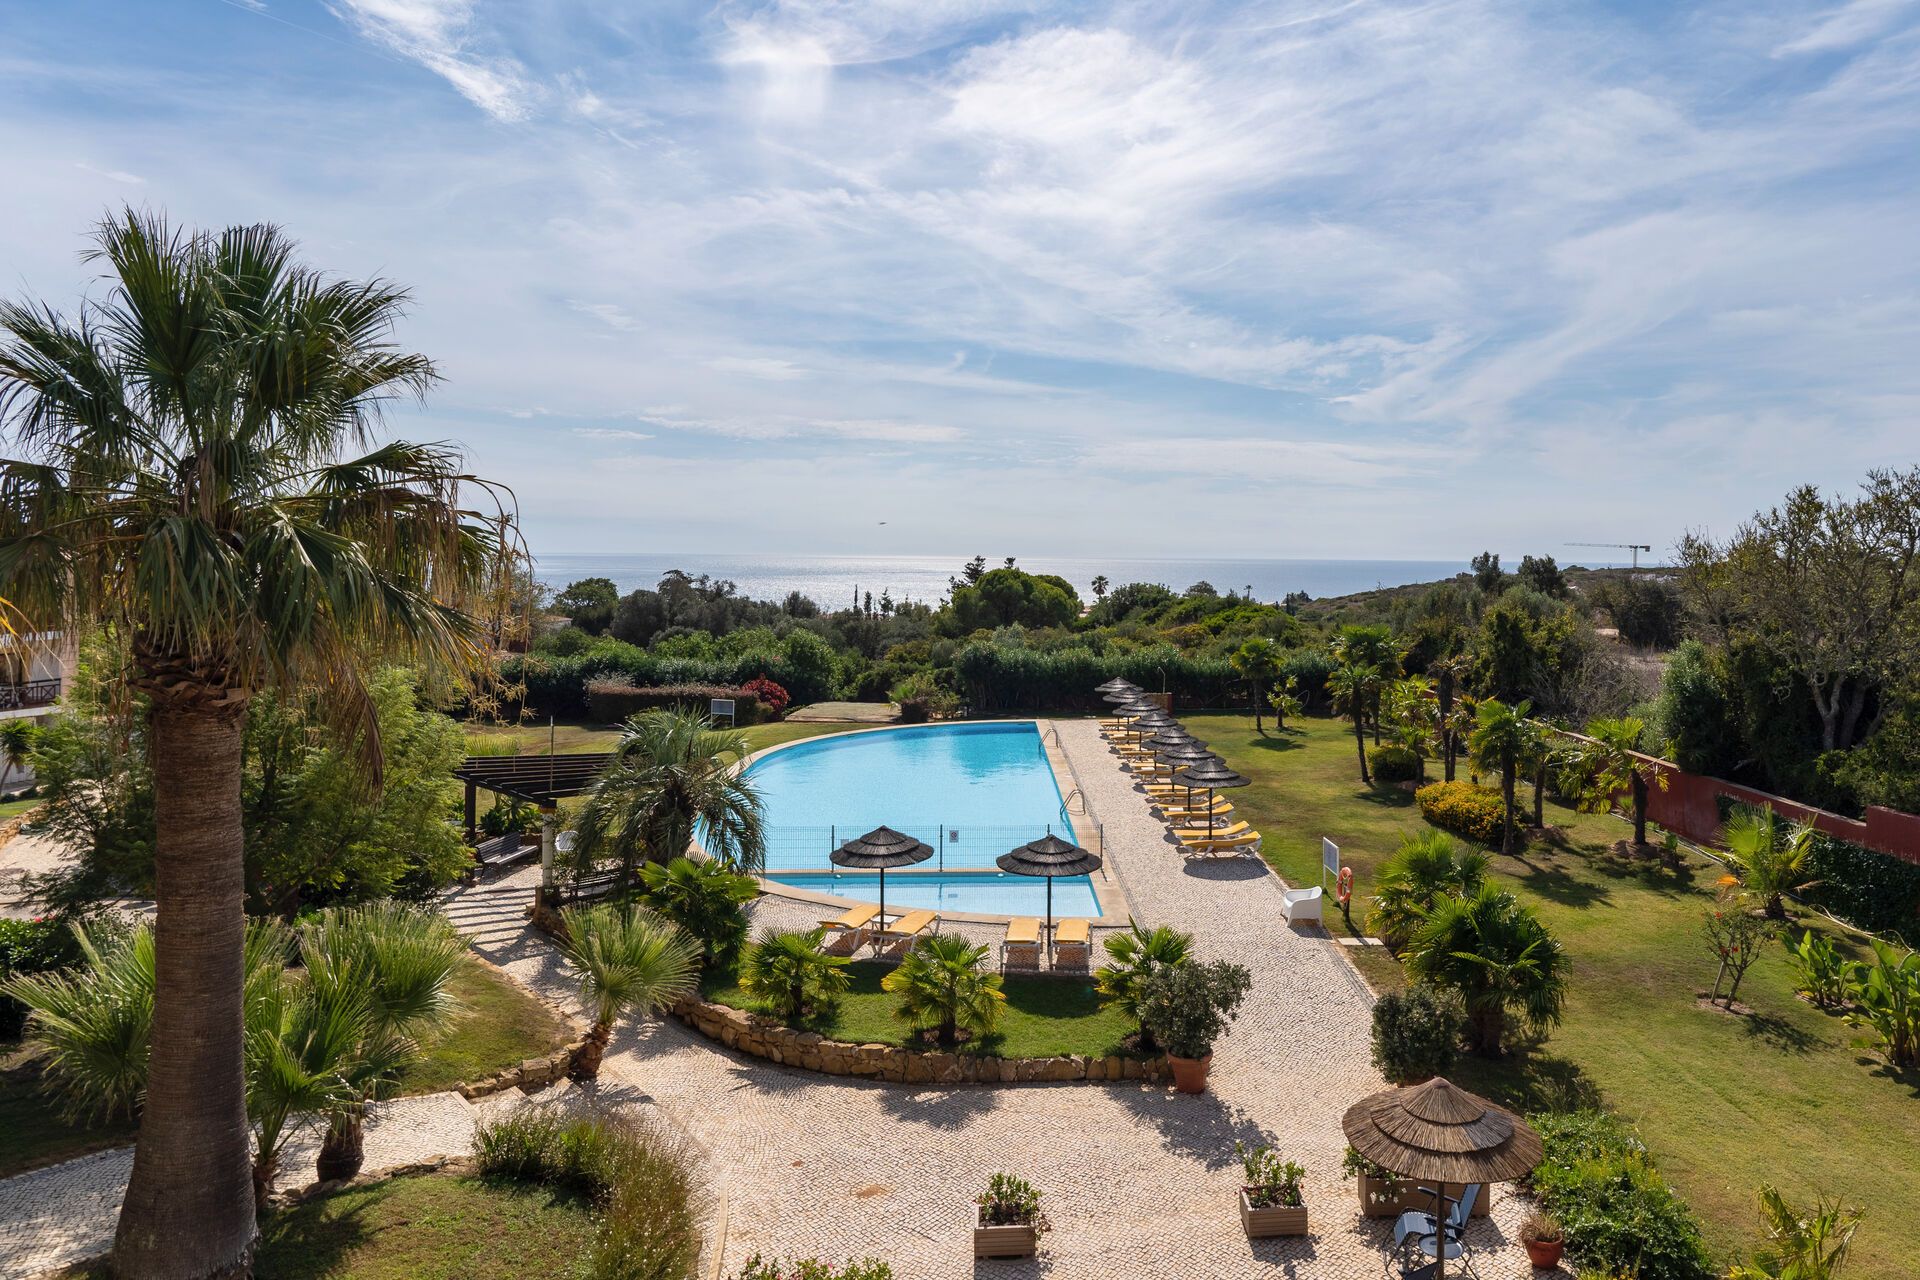 Portugal - Algarve - Faro - Hotel Luzmar Villas 4*